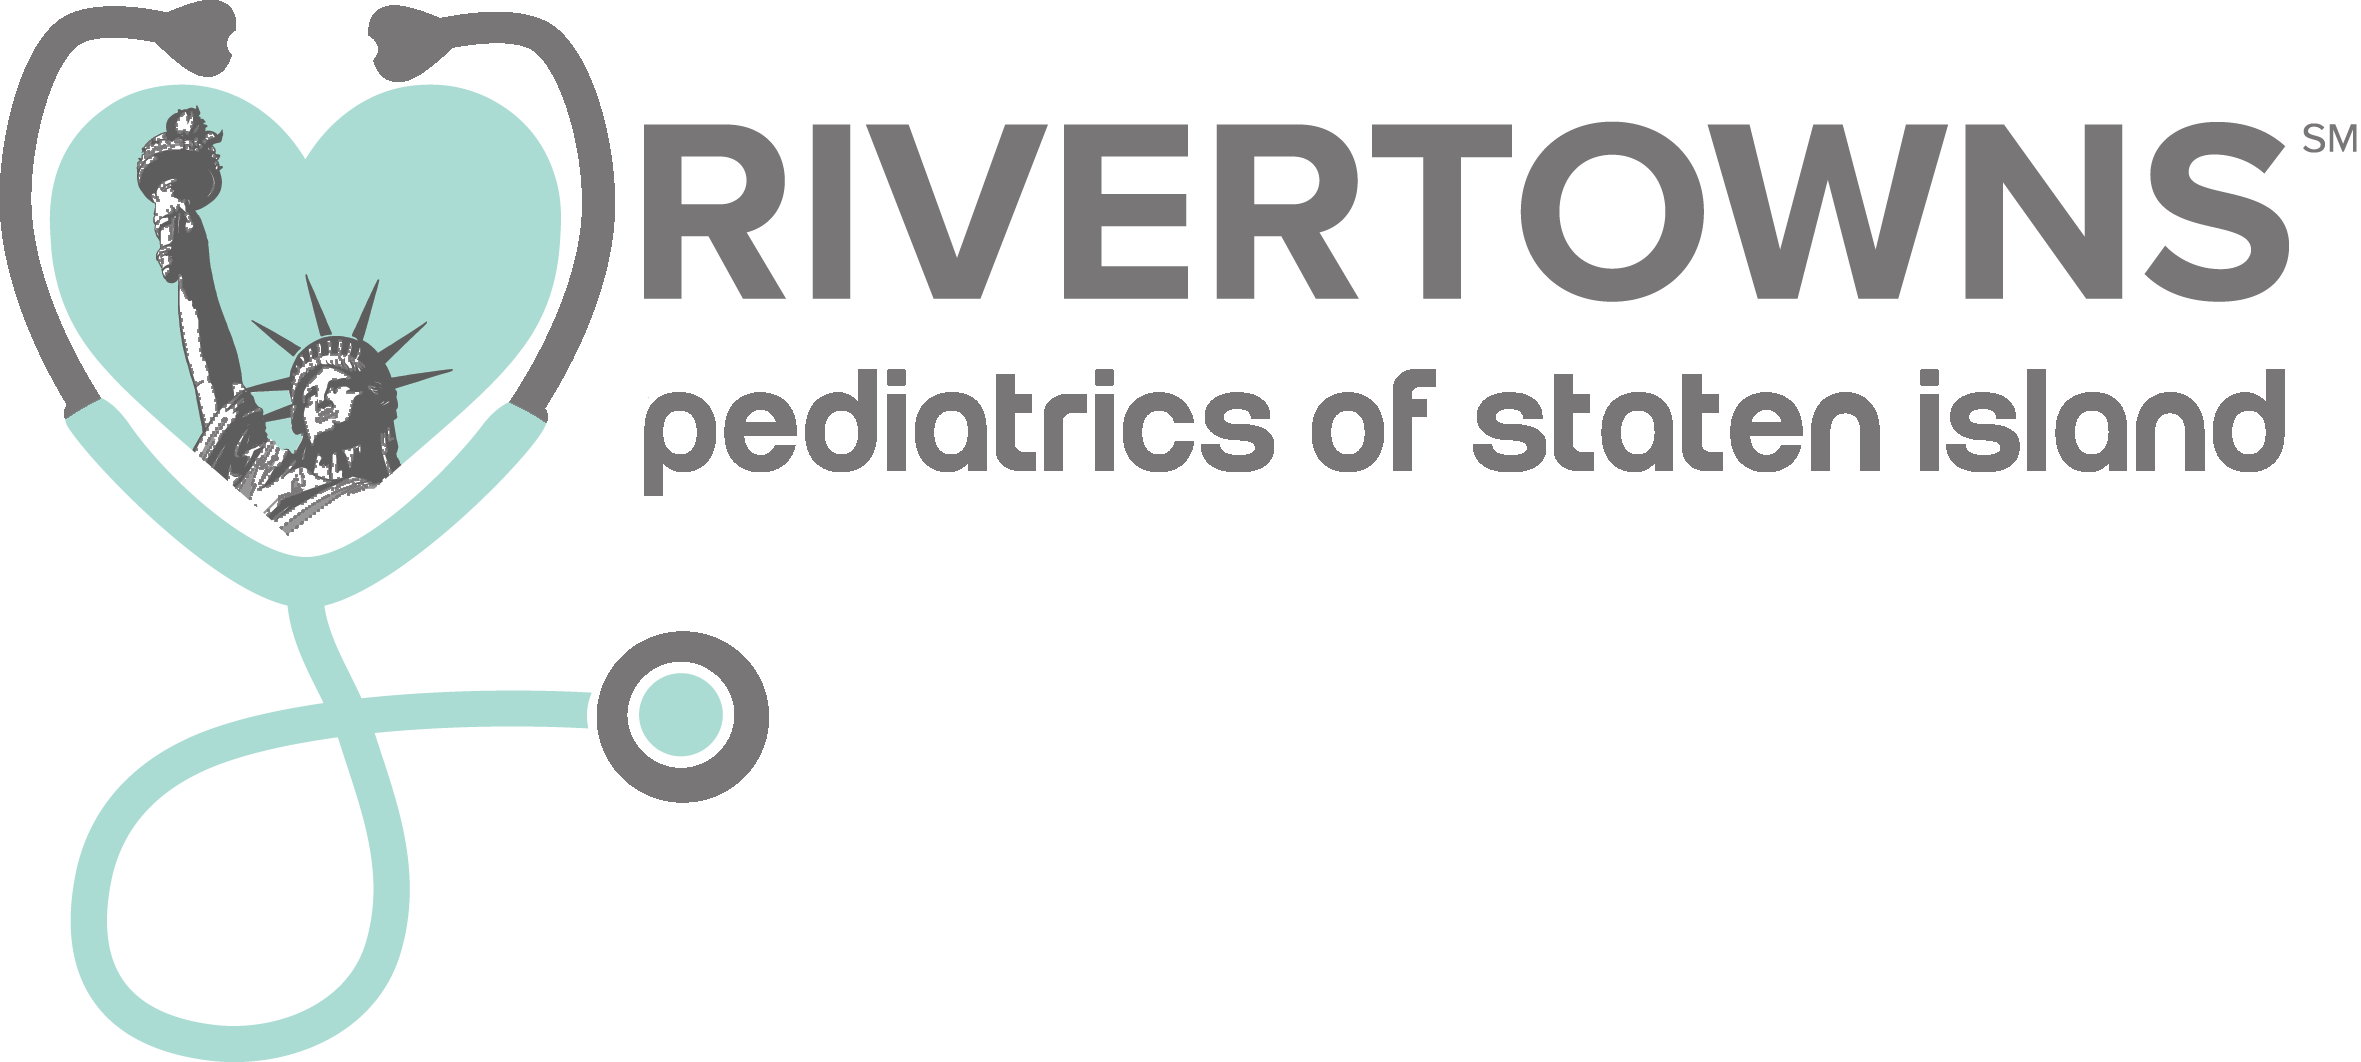 rivertowns logo